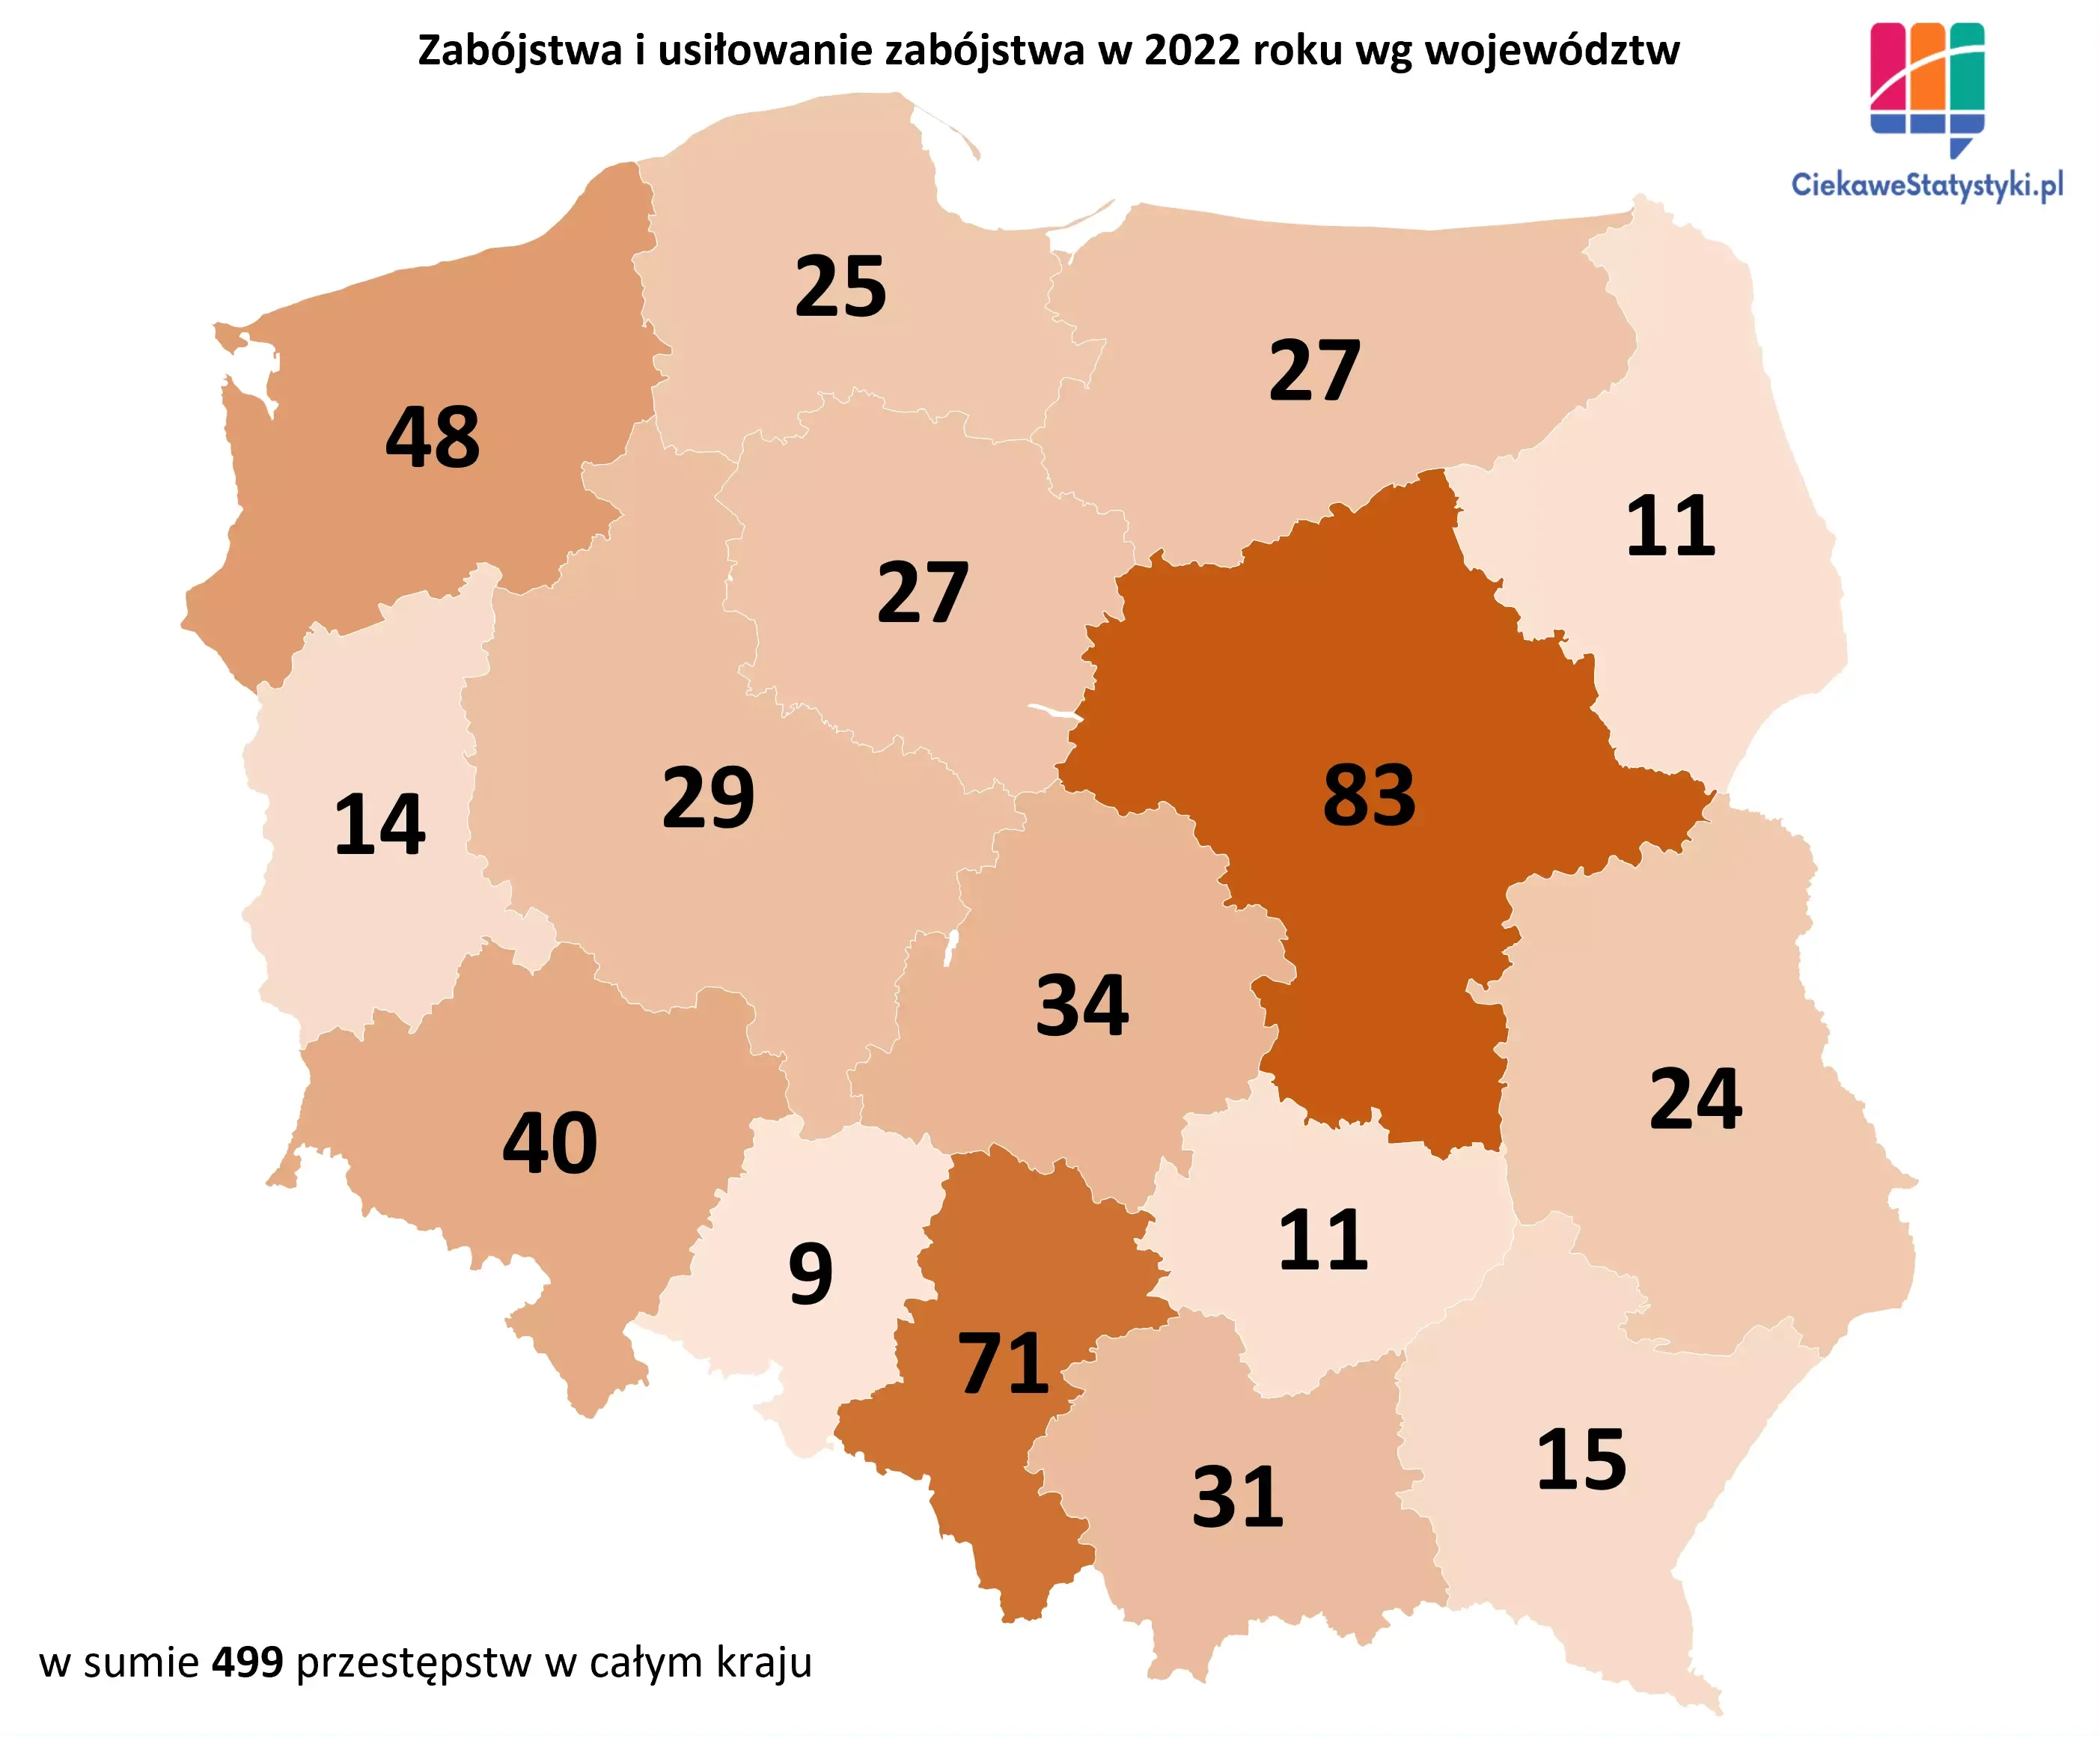 Mapa prezentuje liczbę zabójstw w Polsce w podziale na województwa